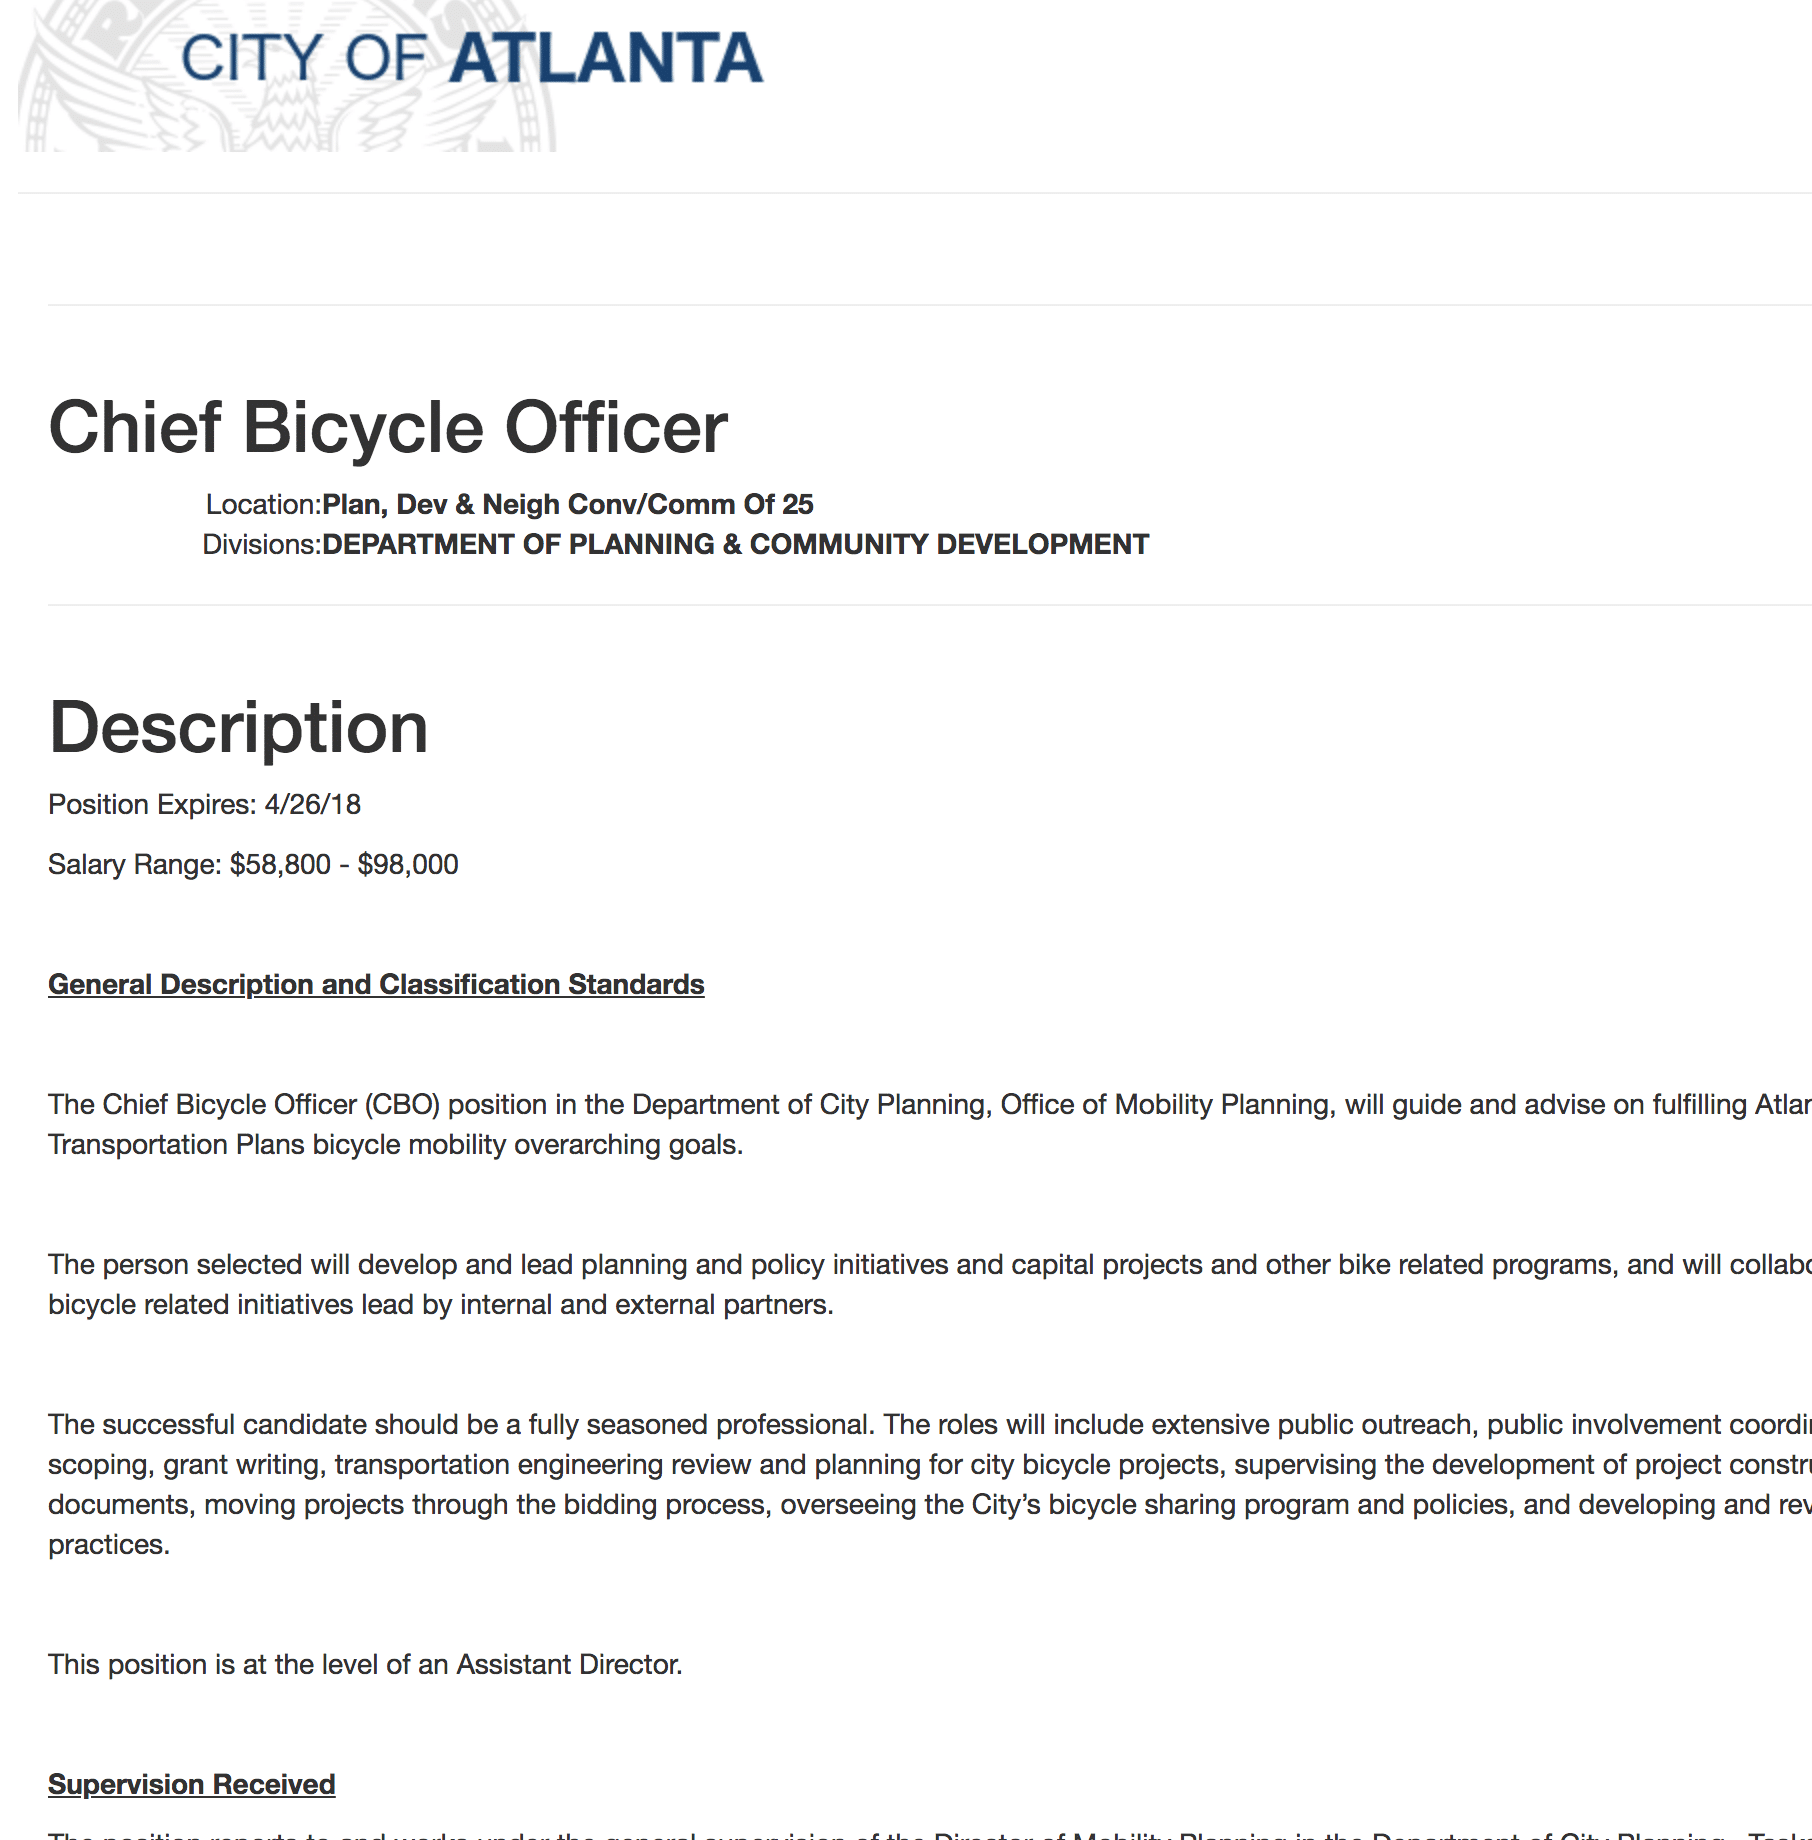 Atlanta's Bike Czar